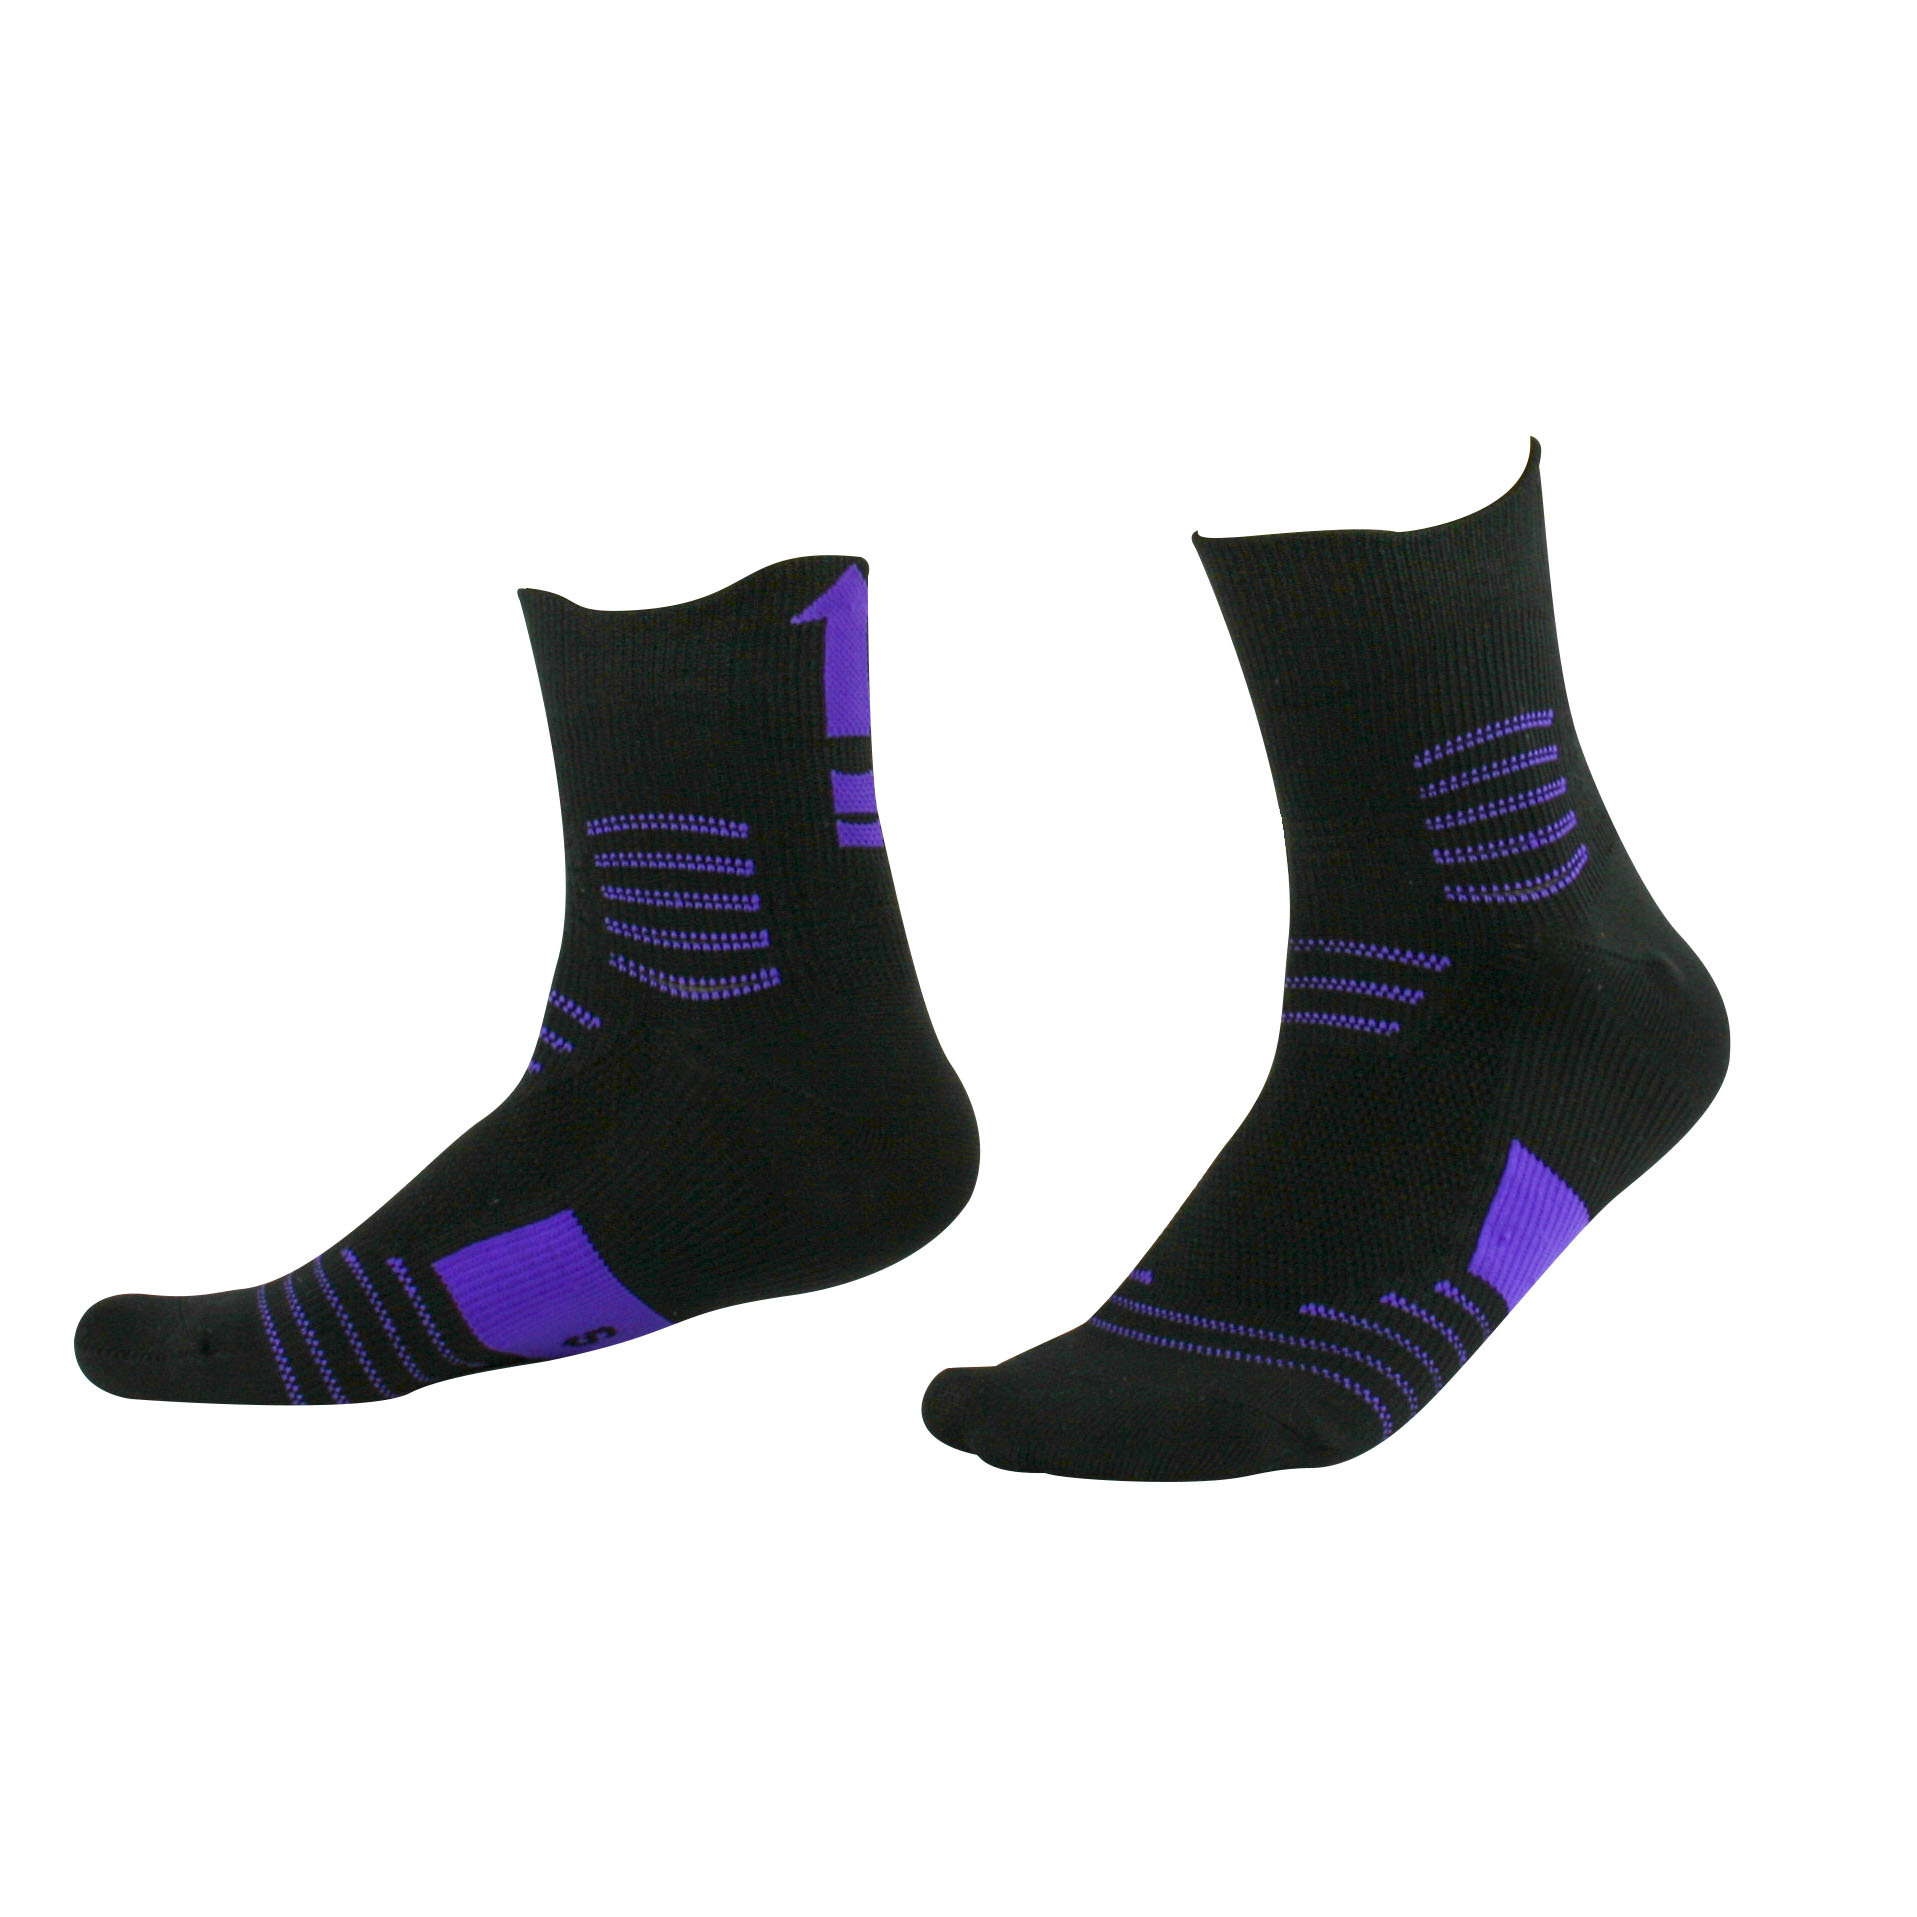 15-20 mmHg Running Compression SocksSports Socks Ankle Socks Compression Stockings Tight Plantar Fascia Compression Socks